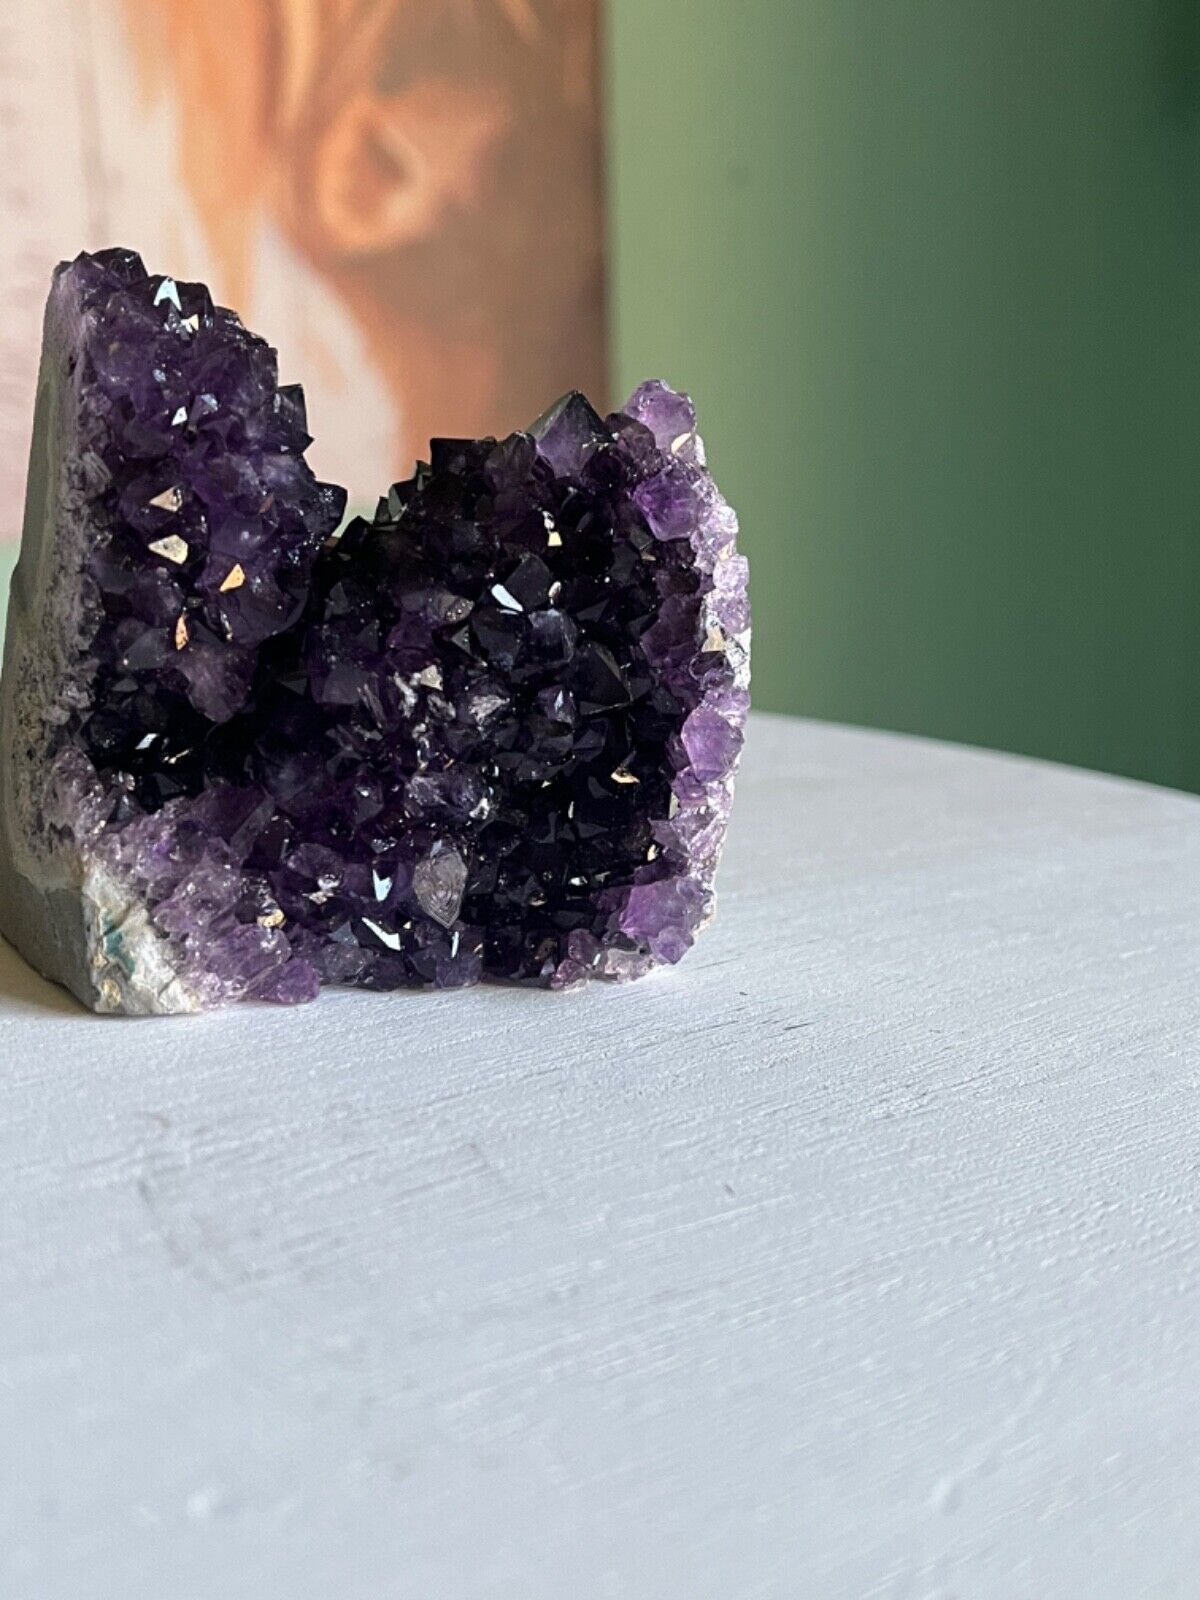 80-100g Raw Amethyst Crystal Quartz Cluster Specimens Healing Reiki Ornaments